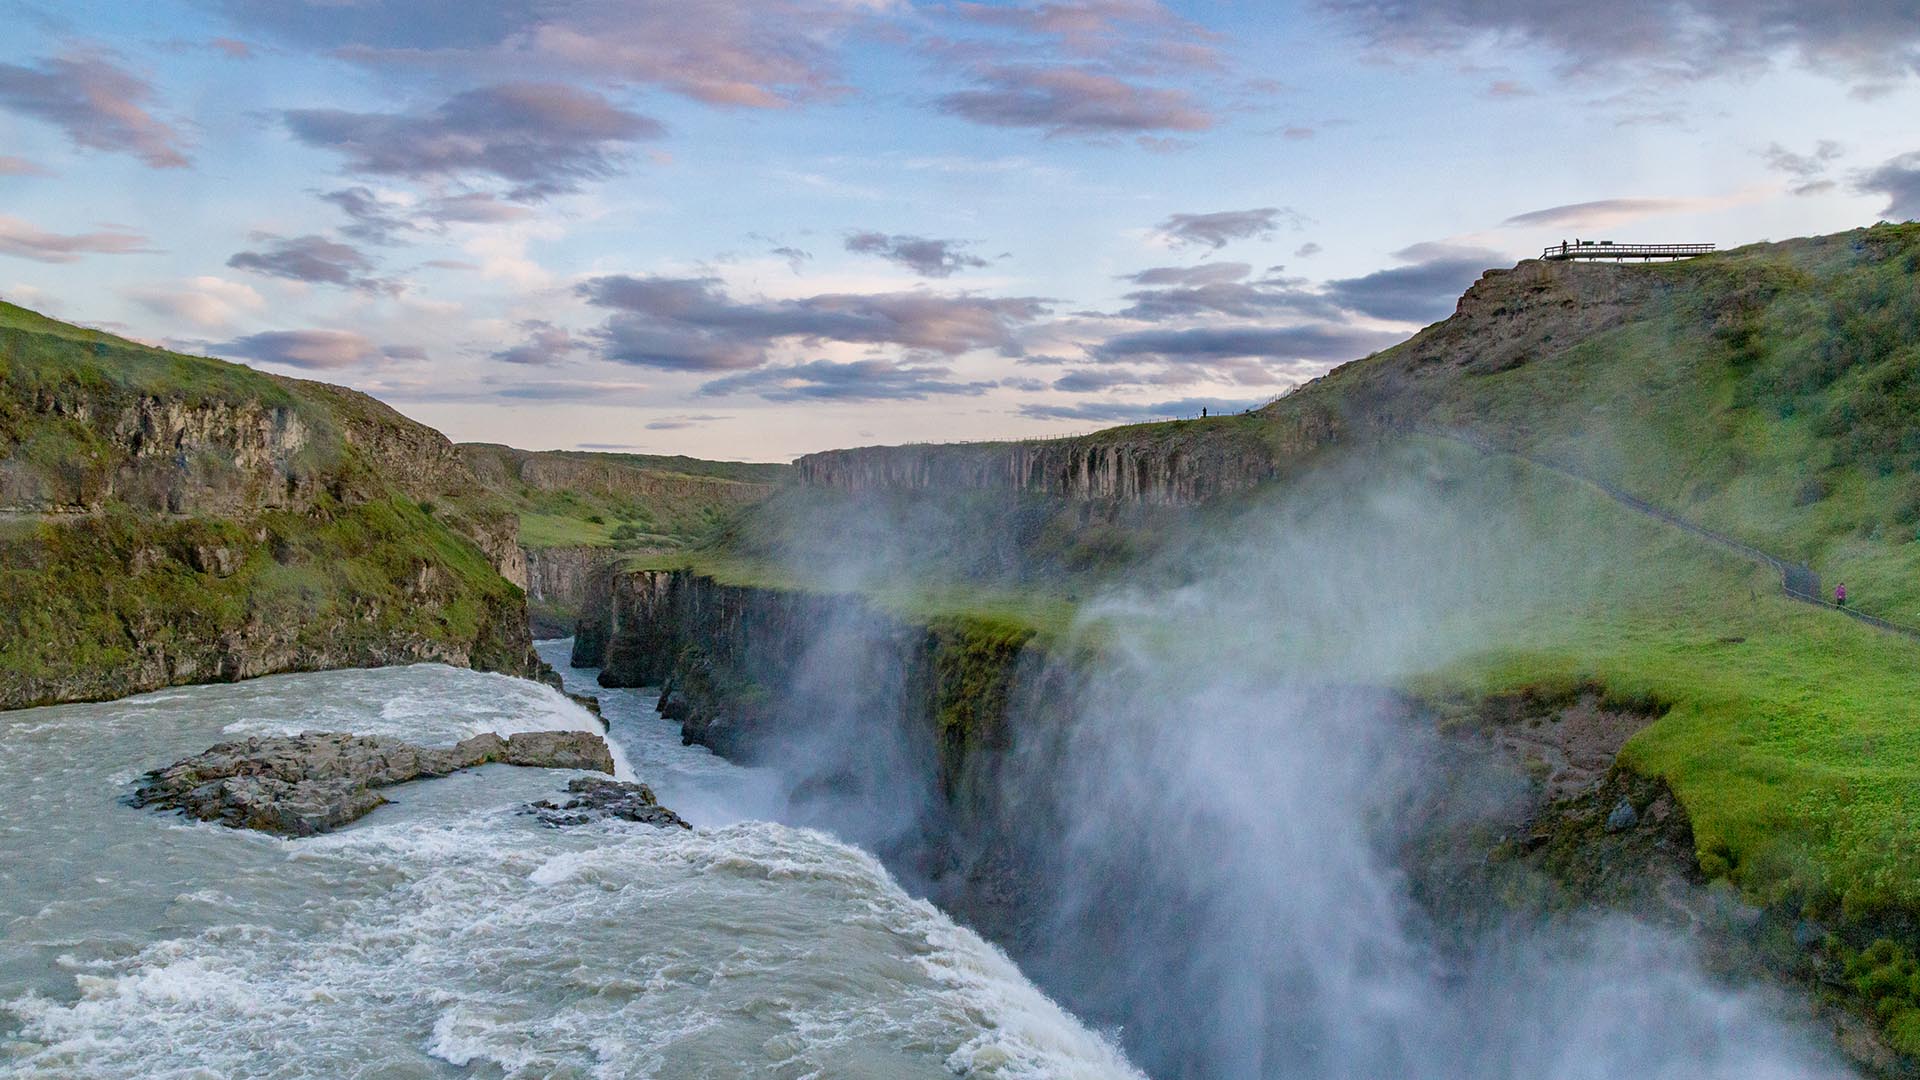 A photo of Gullfoss Waterfall by liljahauksdottir